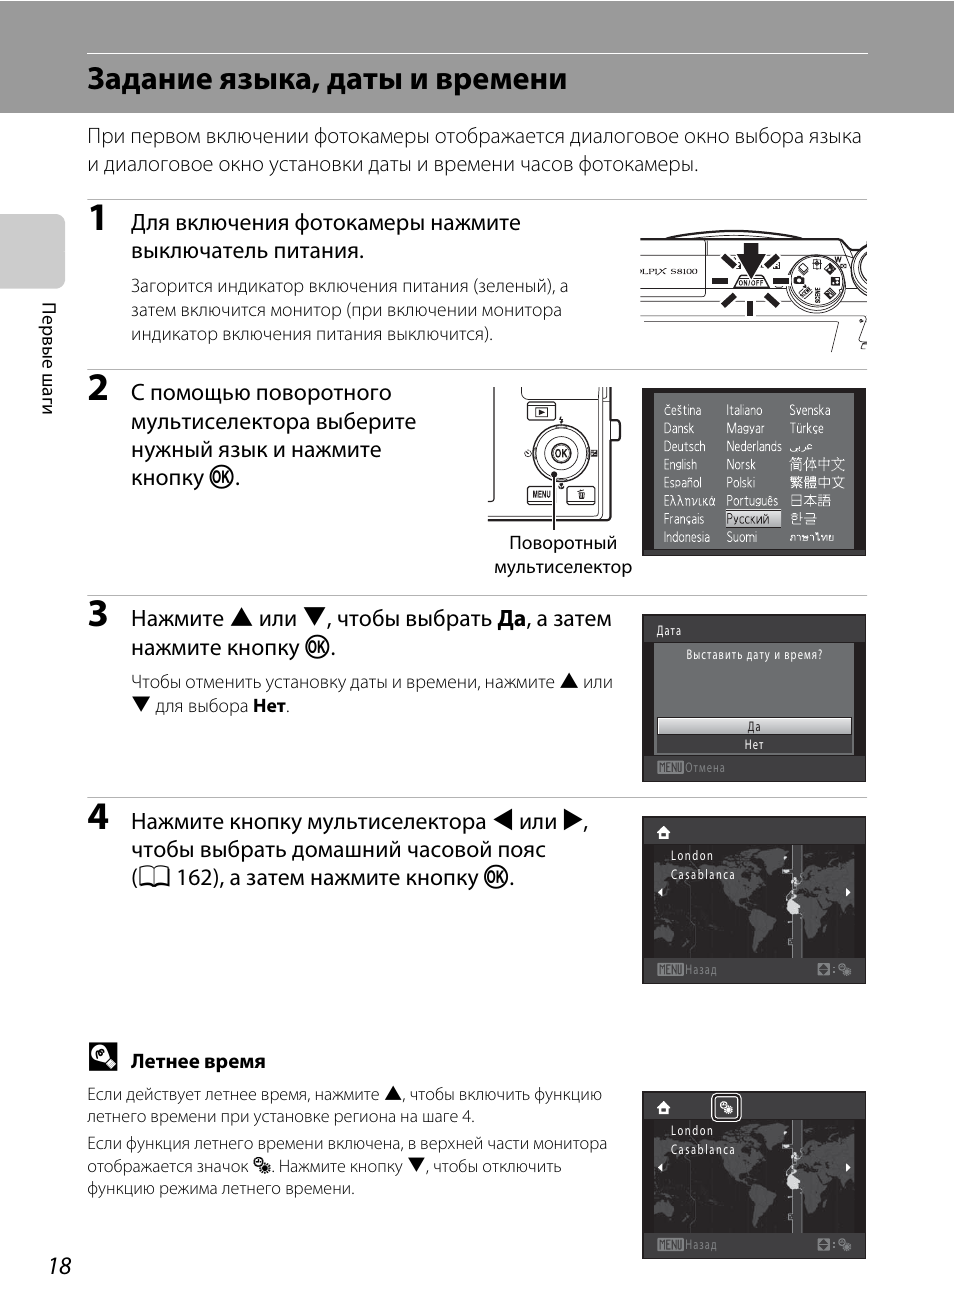 Задание языка, даты и времени | Инструкция по эксплуатации Nikon COOLPIX-S8100 | Страница 30 / 220